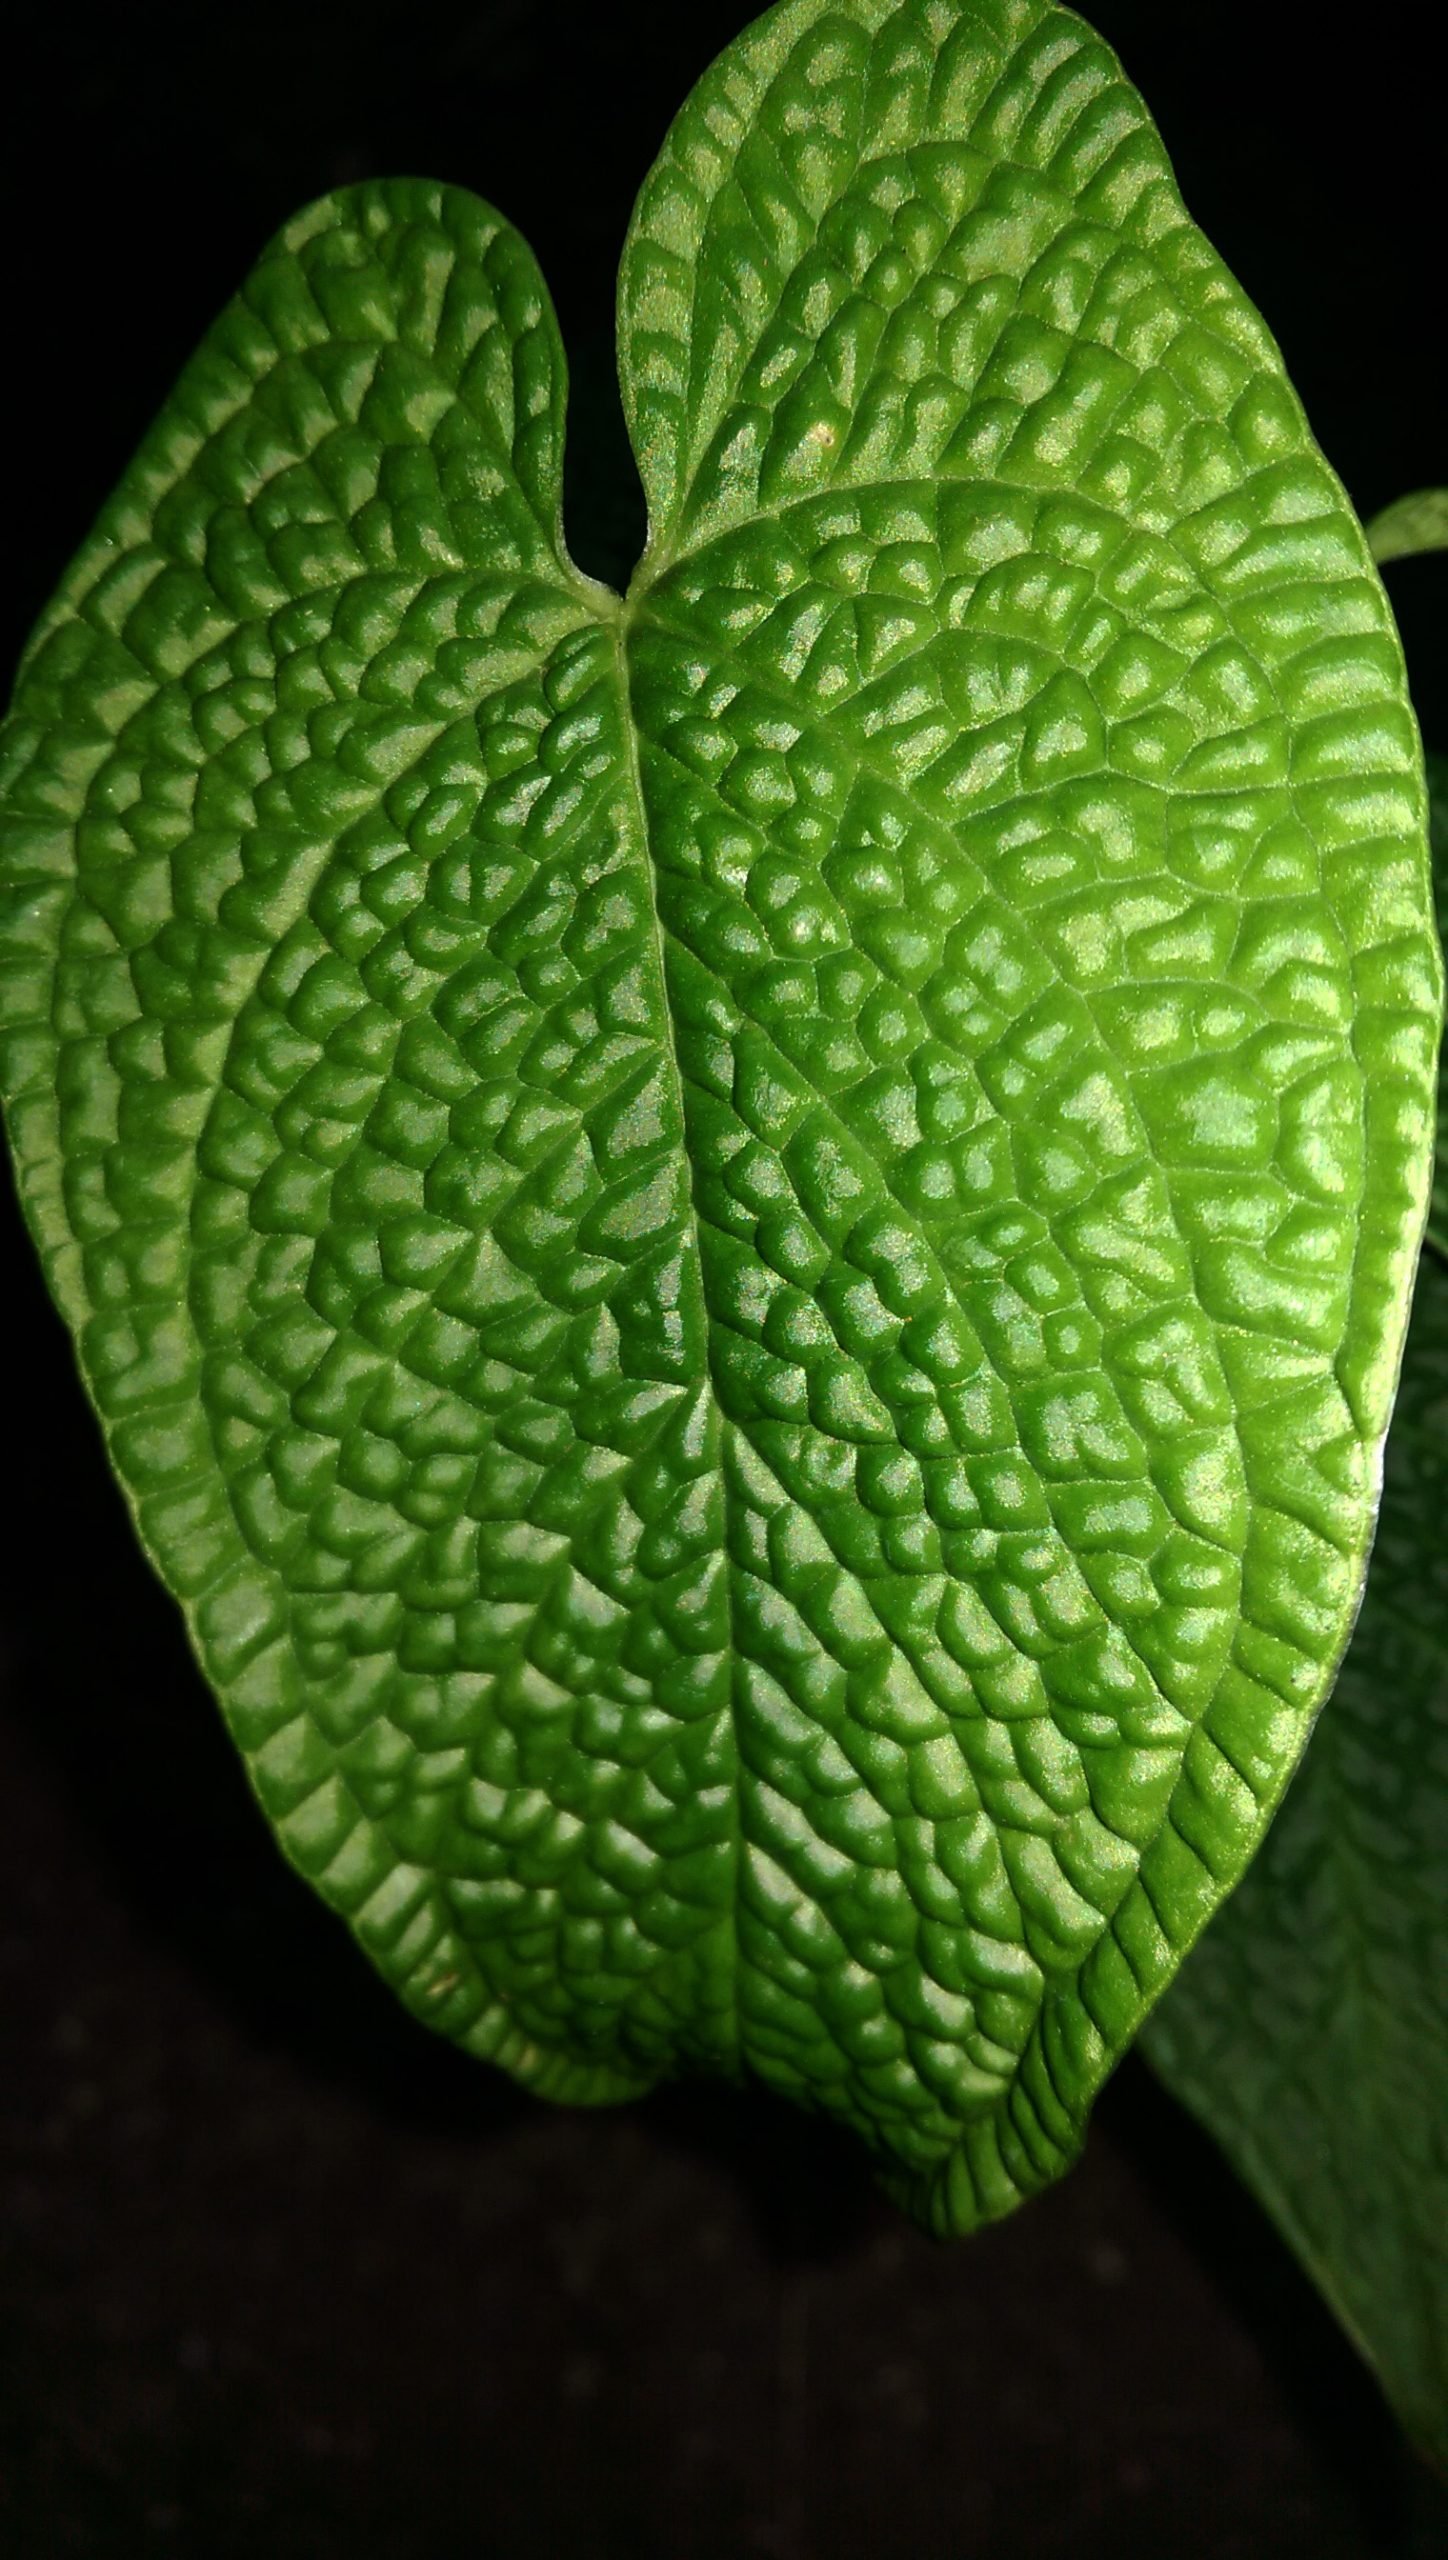 Anthurium corrugatum – Equaflor-A